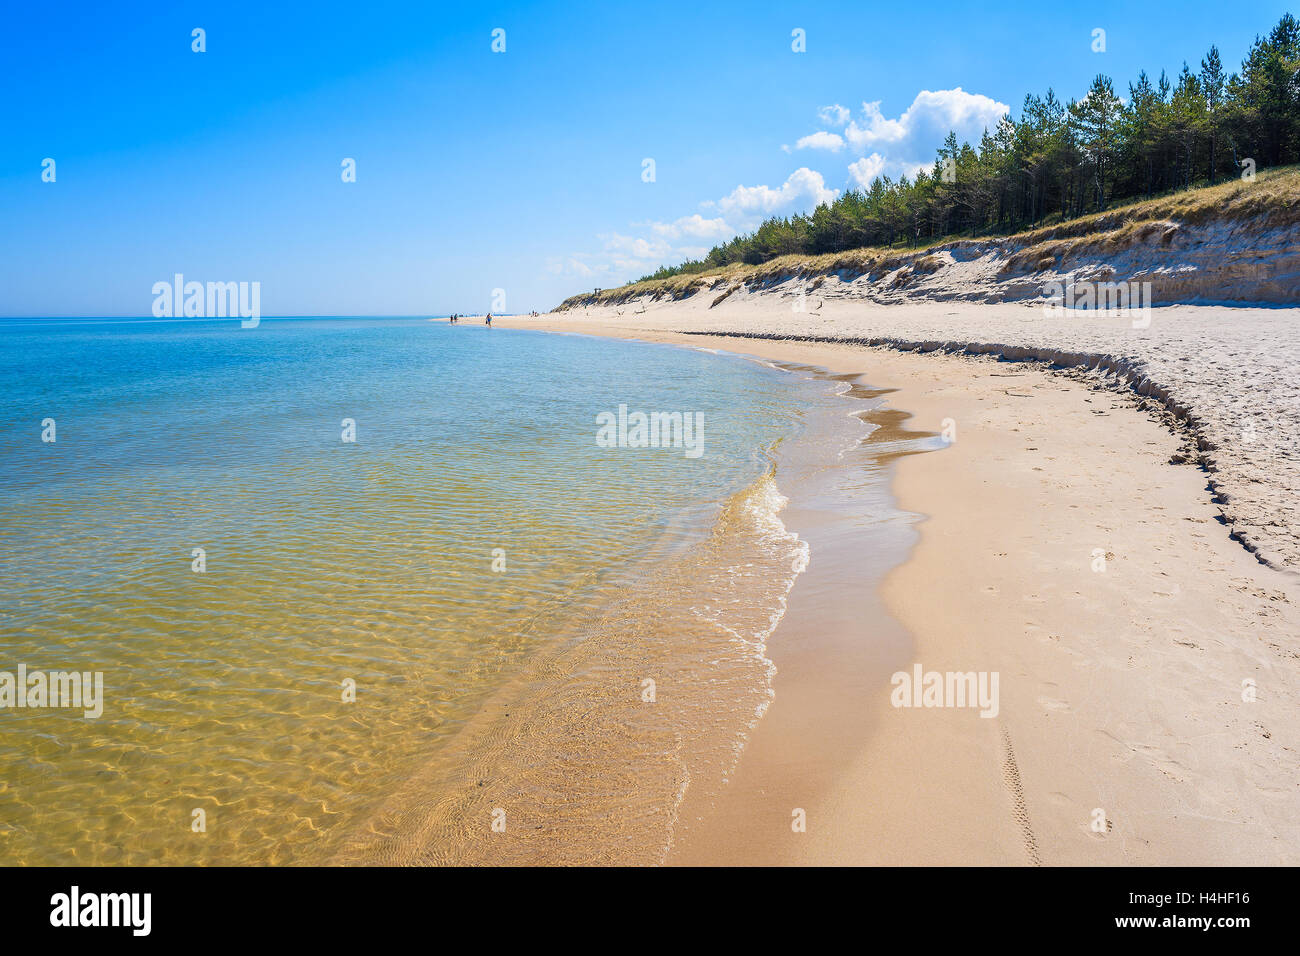 Sandy beach in Lubiatowo coastal village, Baltic Sea, Poland Stock Photo